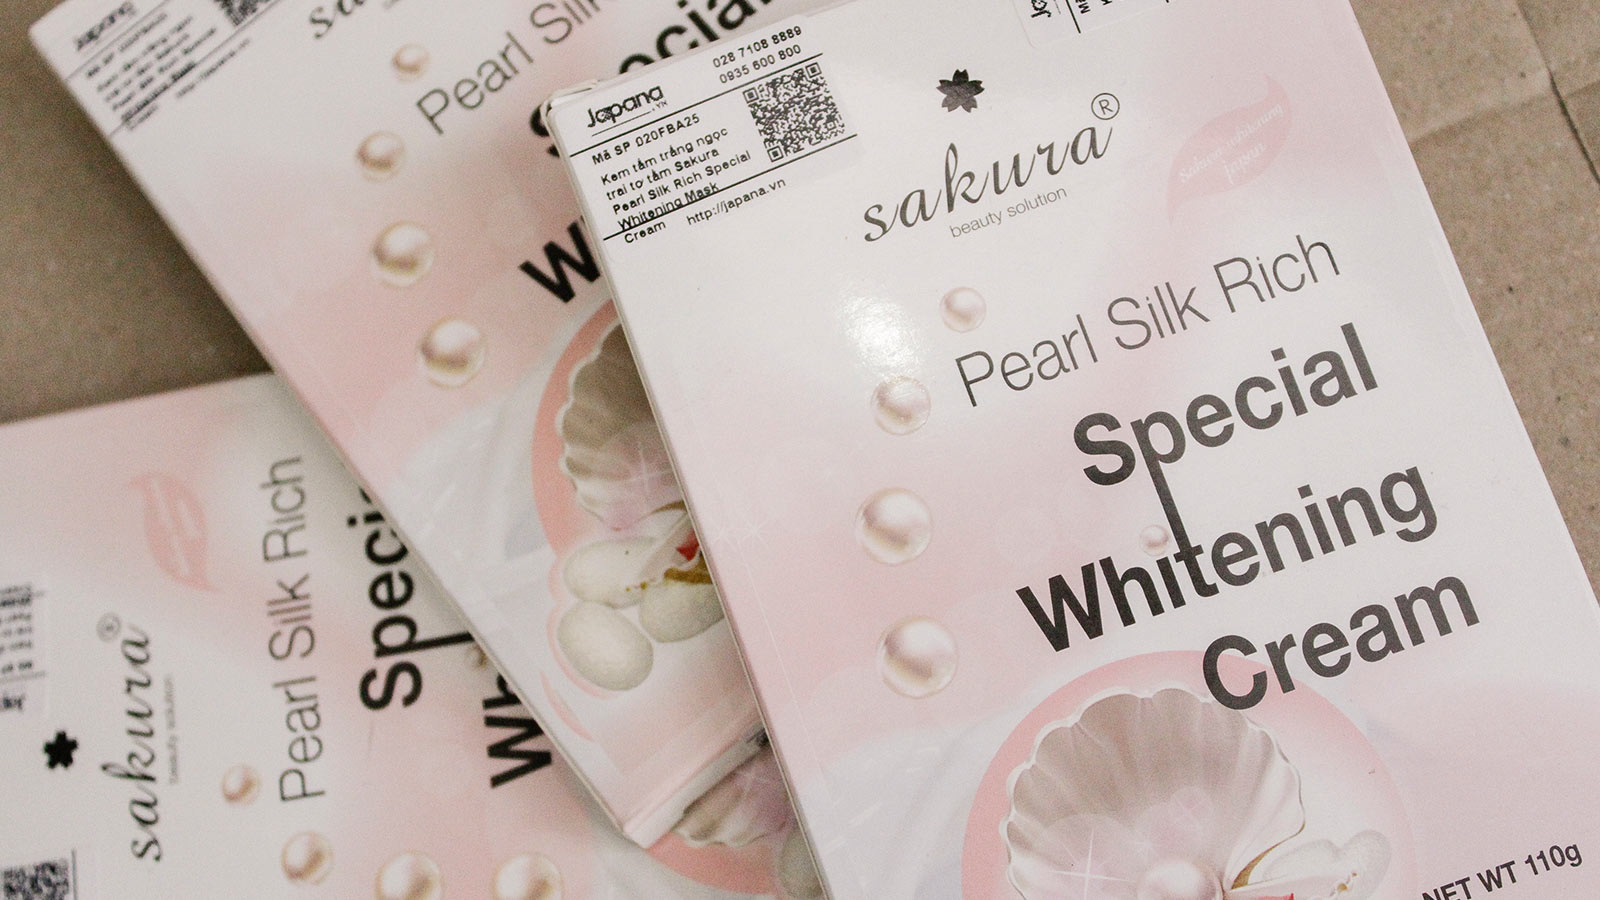 Kem tắm trắng Sakura Pearl Silk Rich Special Whitening